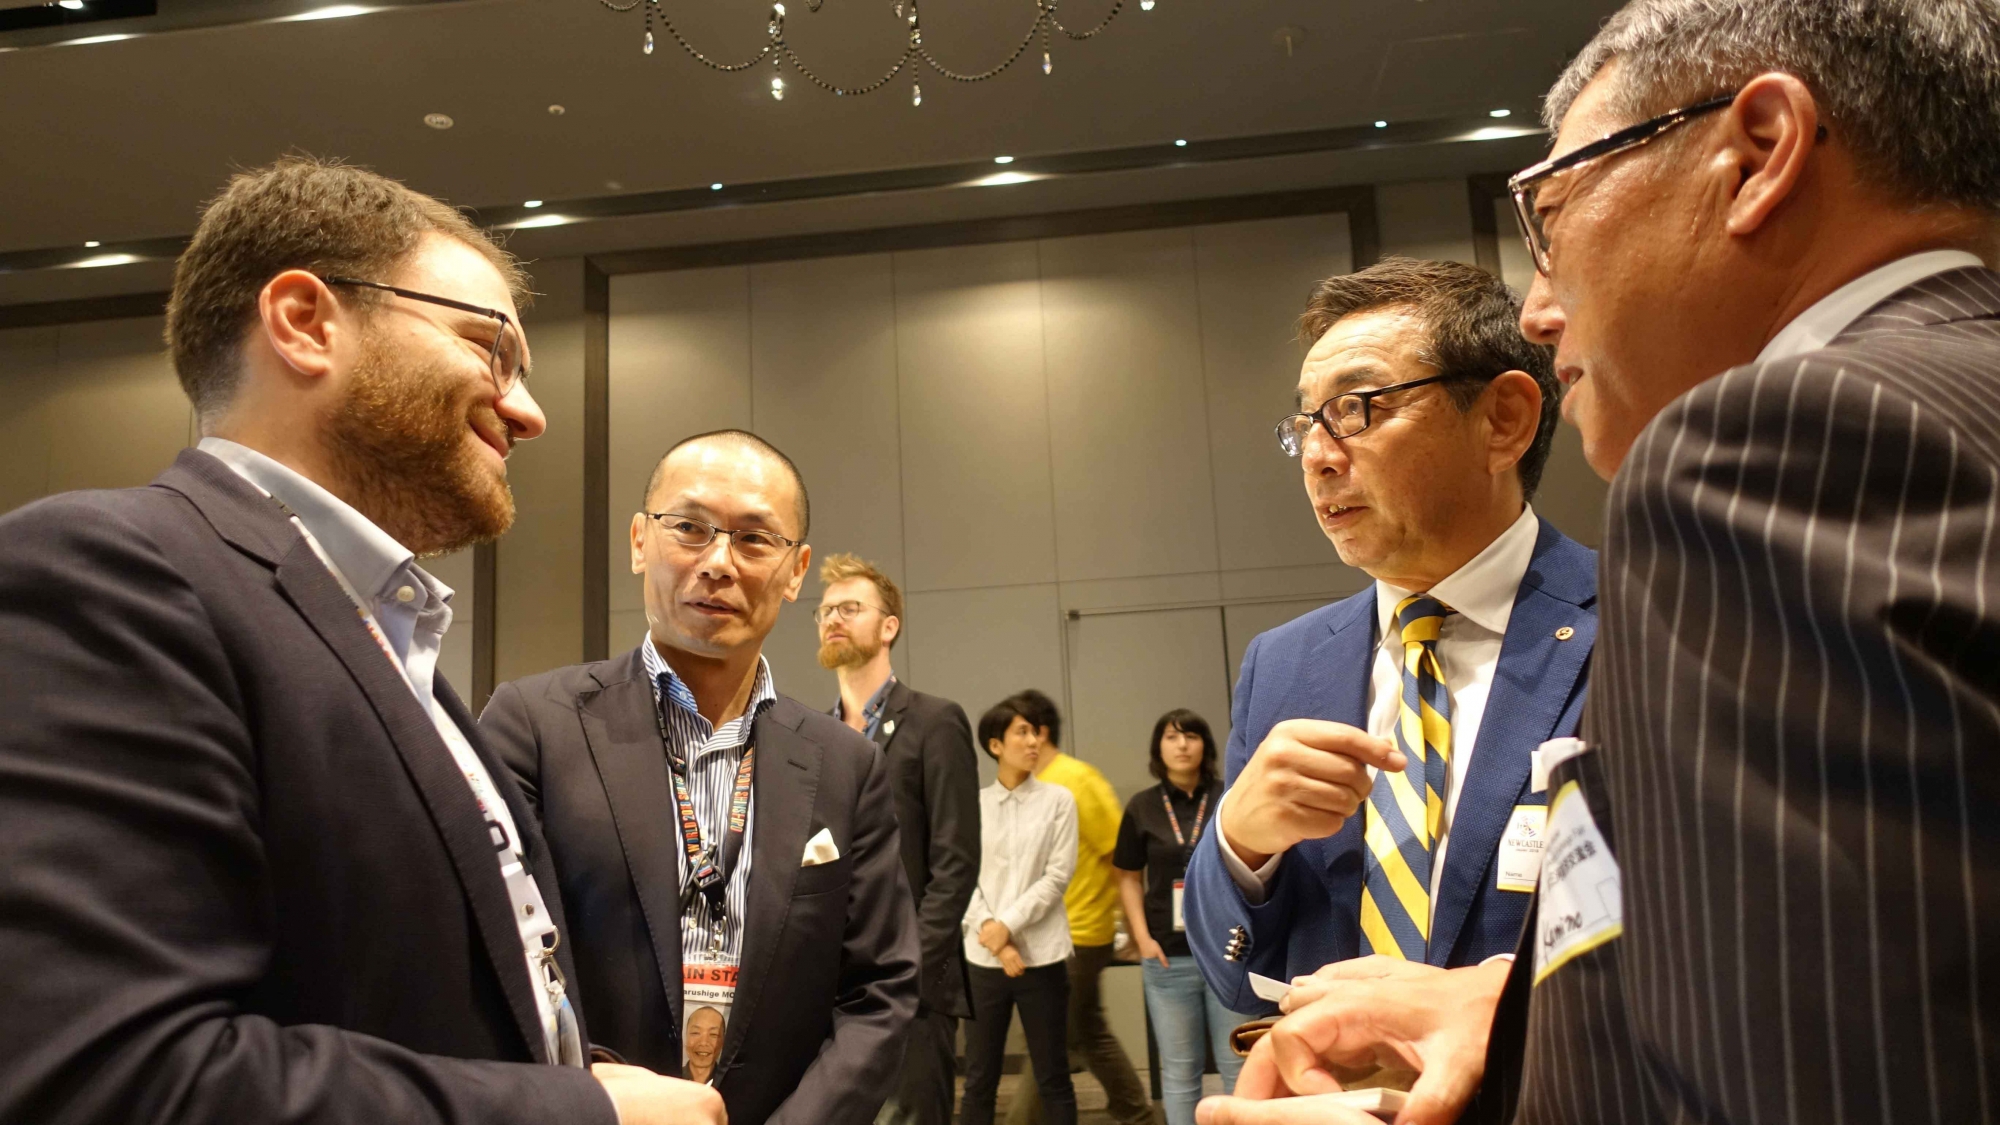 2)	La conférence a permis à la délégation neuchâteloise de présenter les compétences en microtechnique de la région à des entrepreneurs japonais.